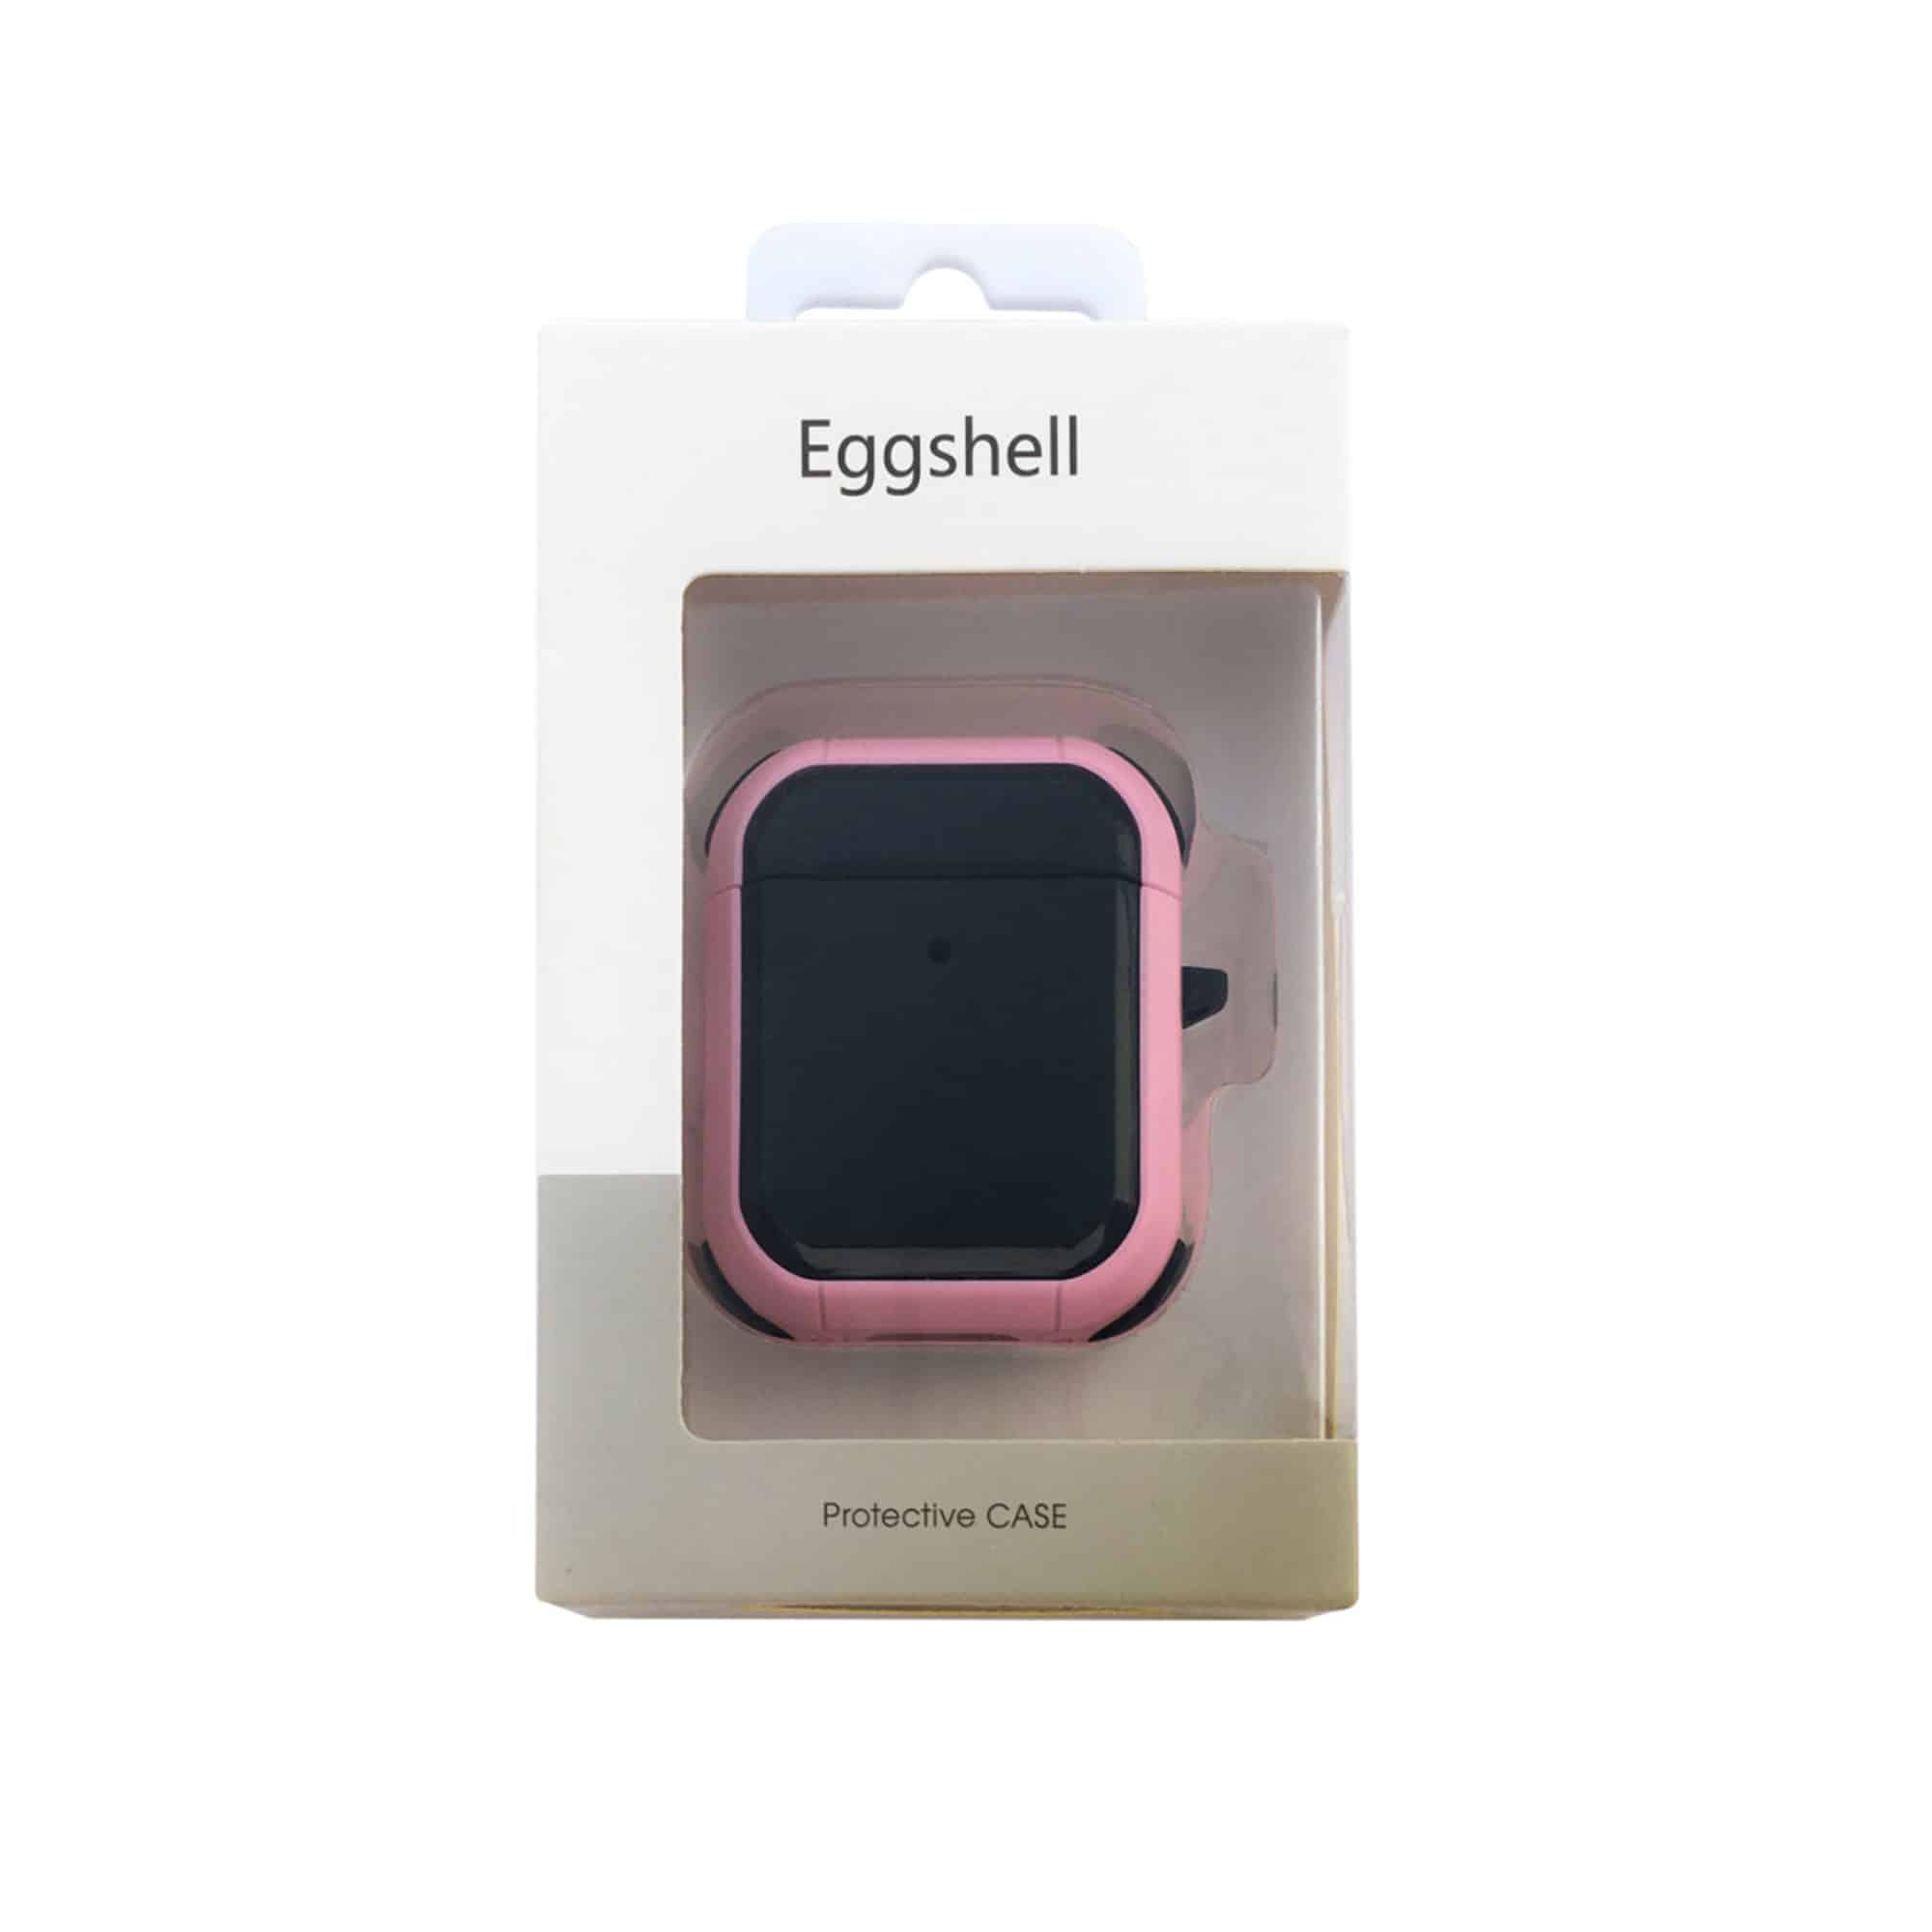 کاور مدل Eggshell مناسب برای کیس اپل ایرپاد 1/2